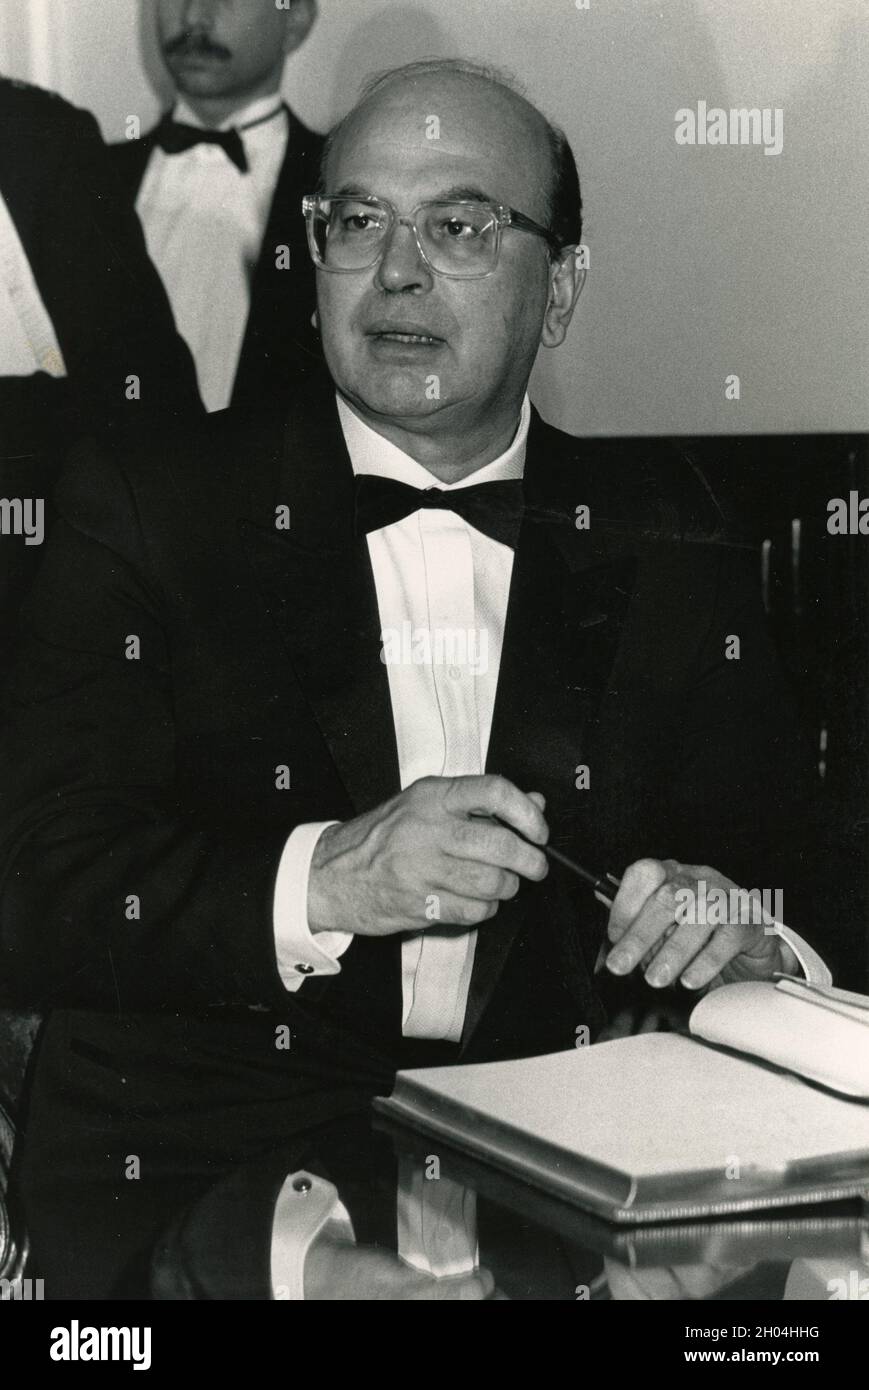 Político italiano y P. Bettino Craxi, 1980s Foto de stock